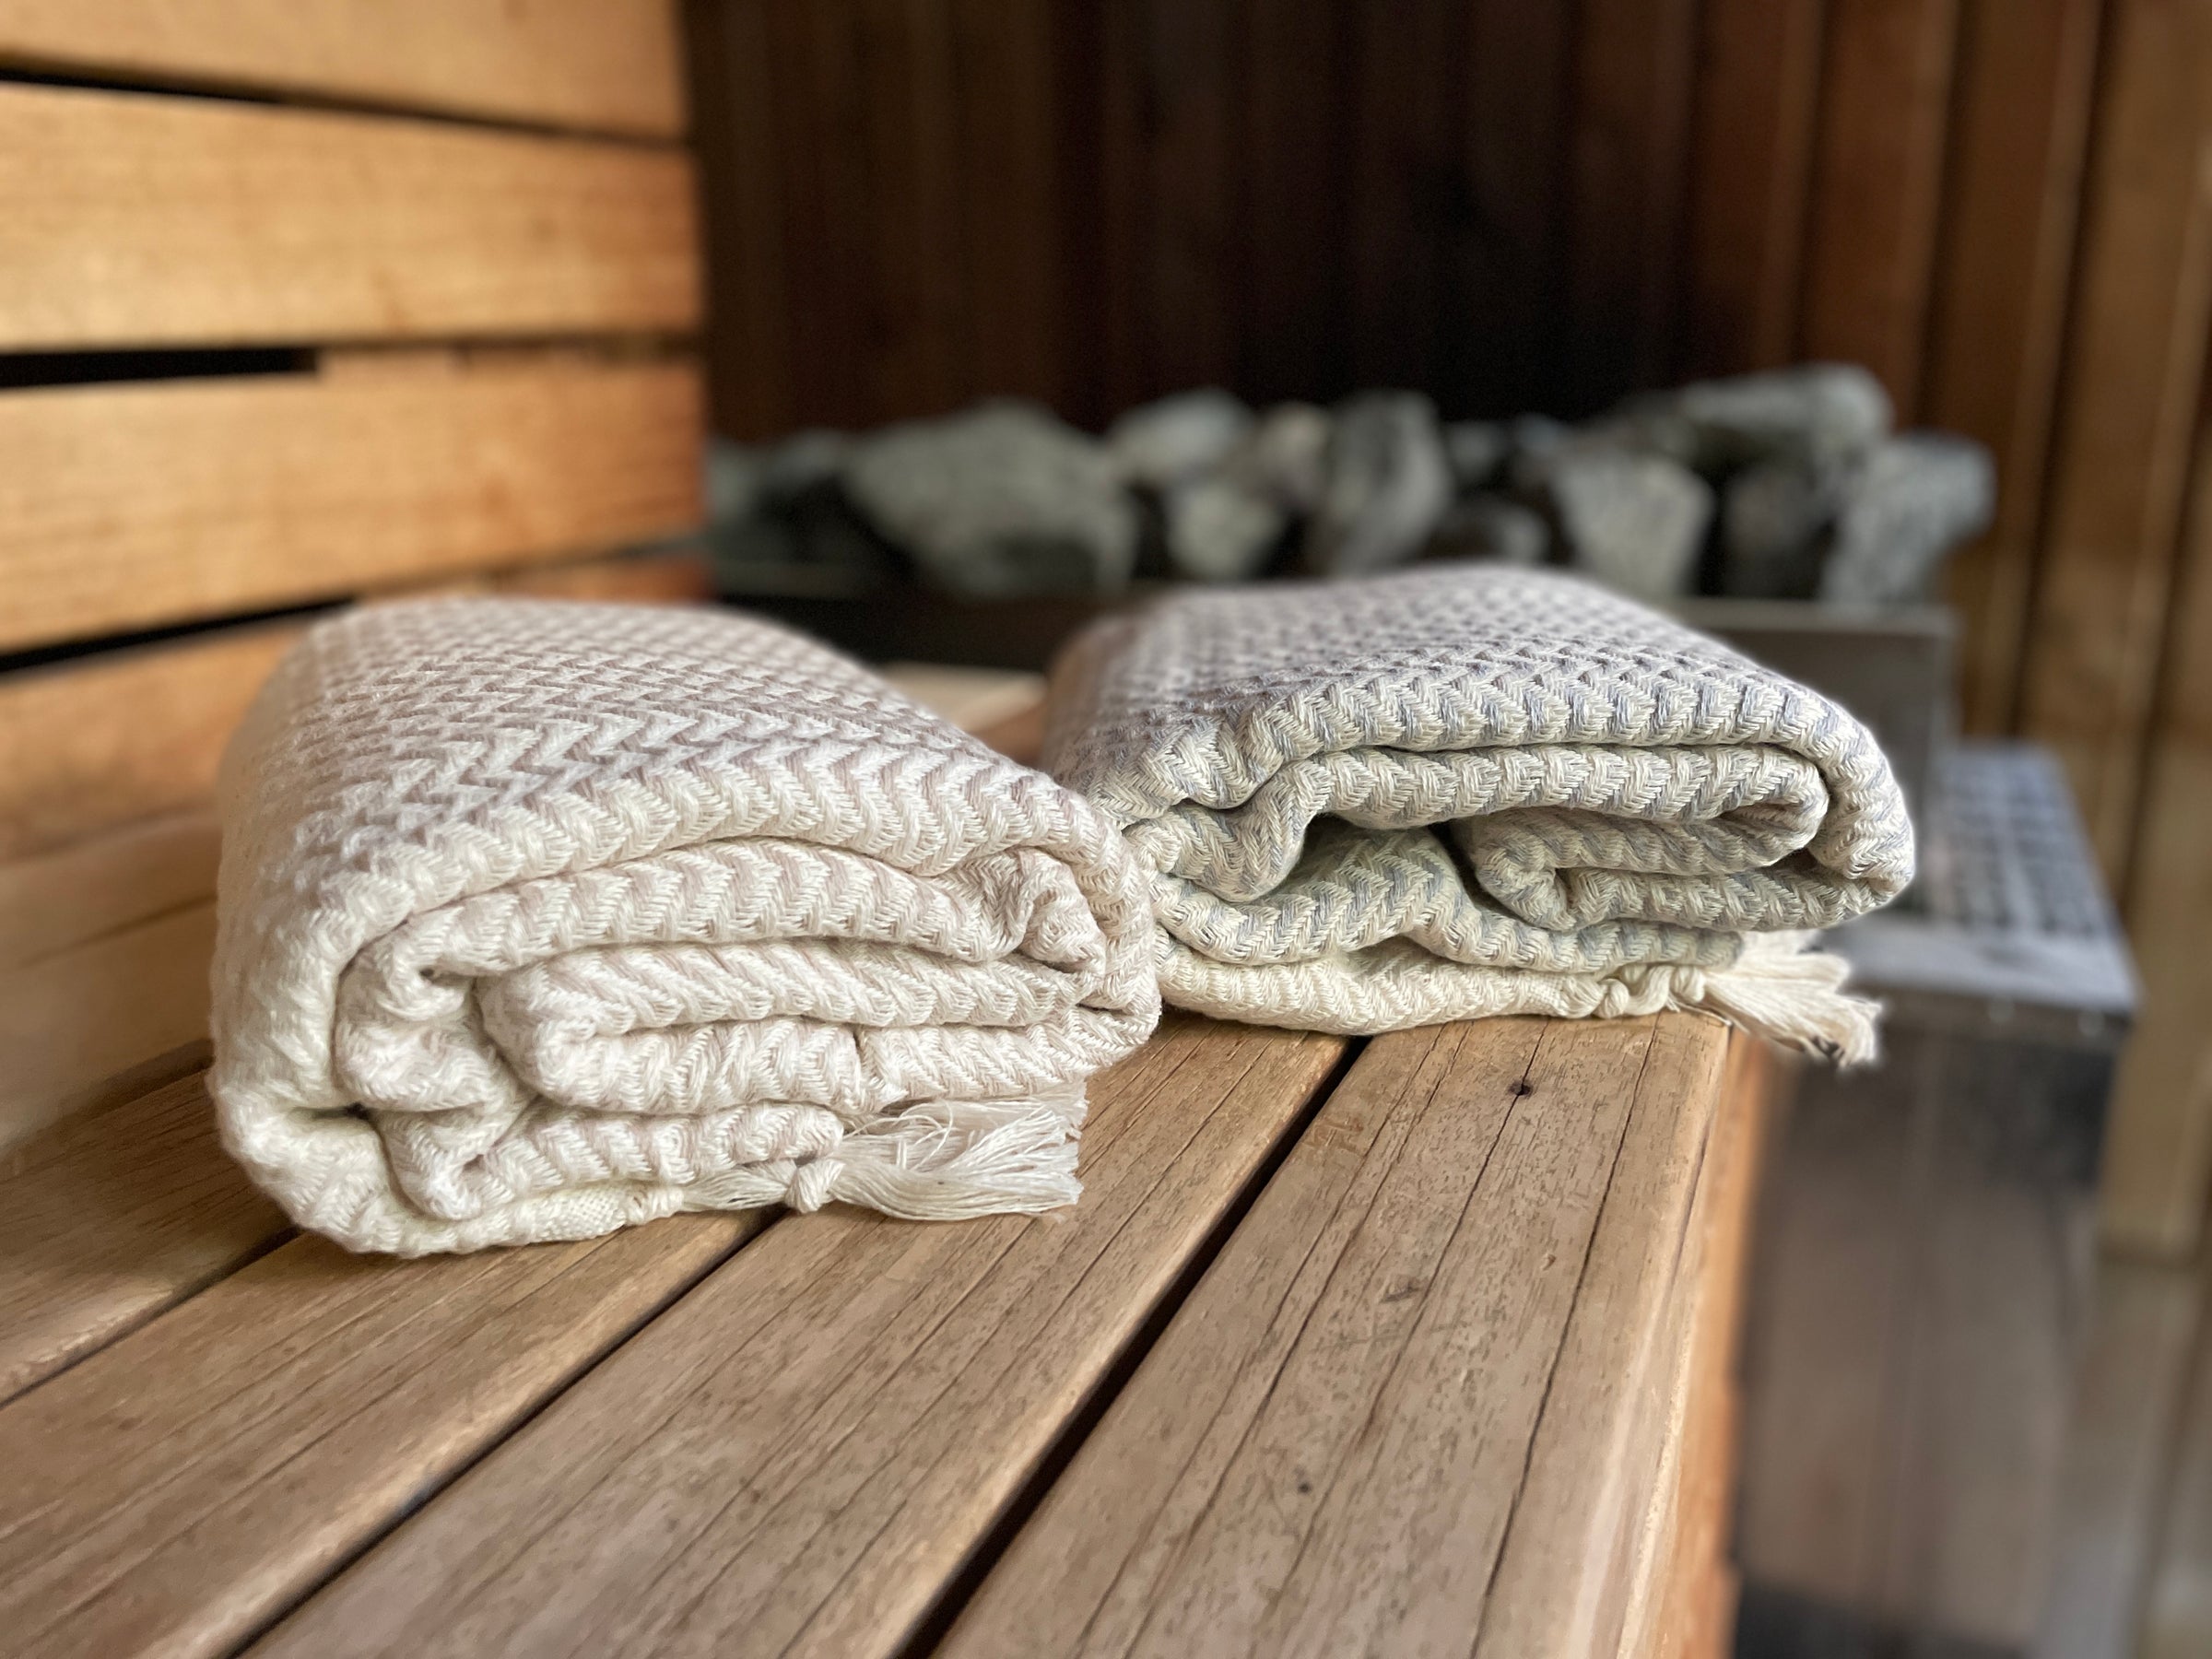 Turkish towels for sauna and spa